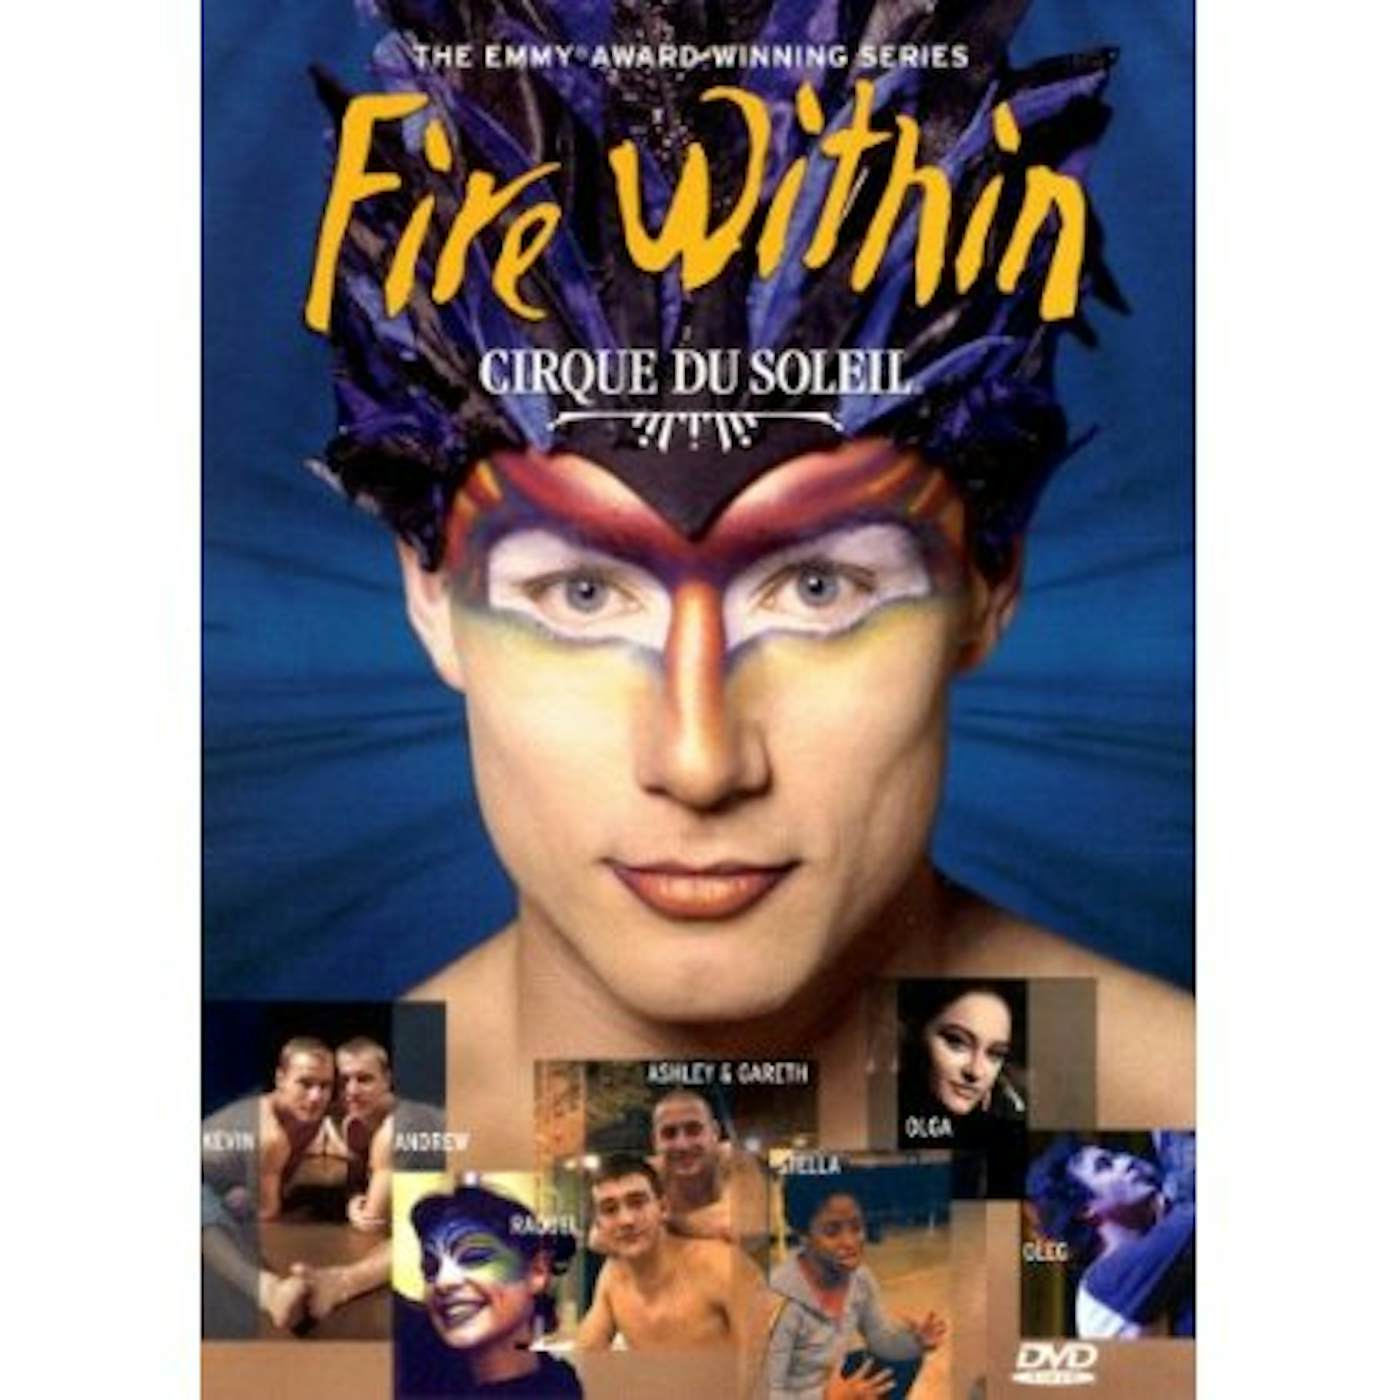 Cirque du Soleil FIRE WITHIN DVD